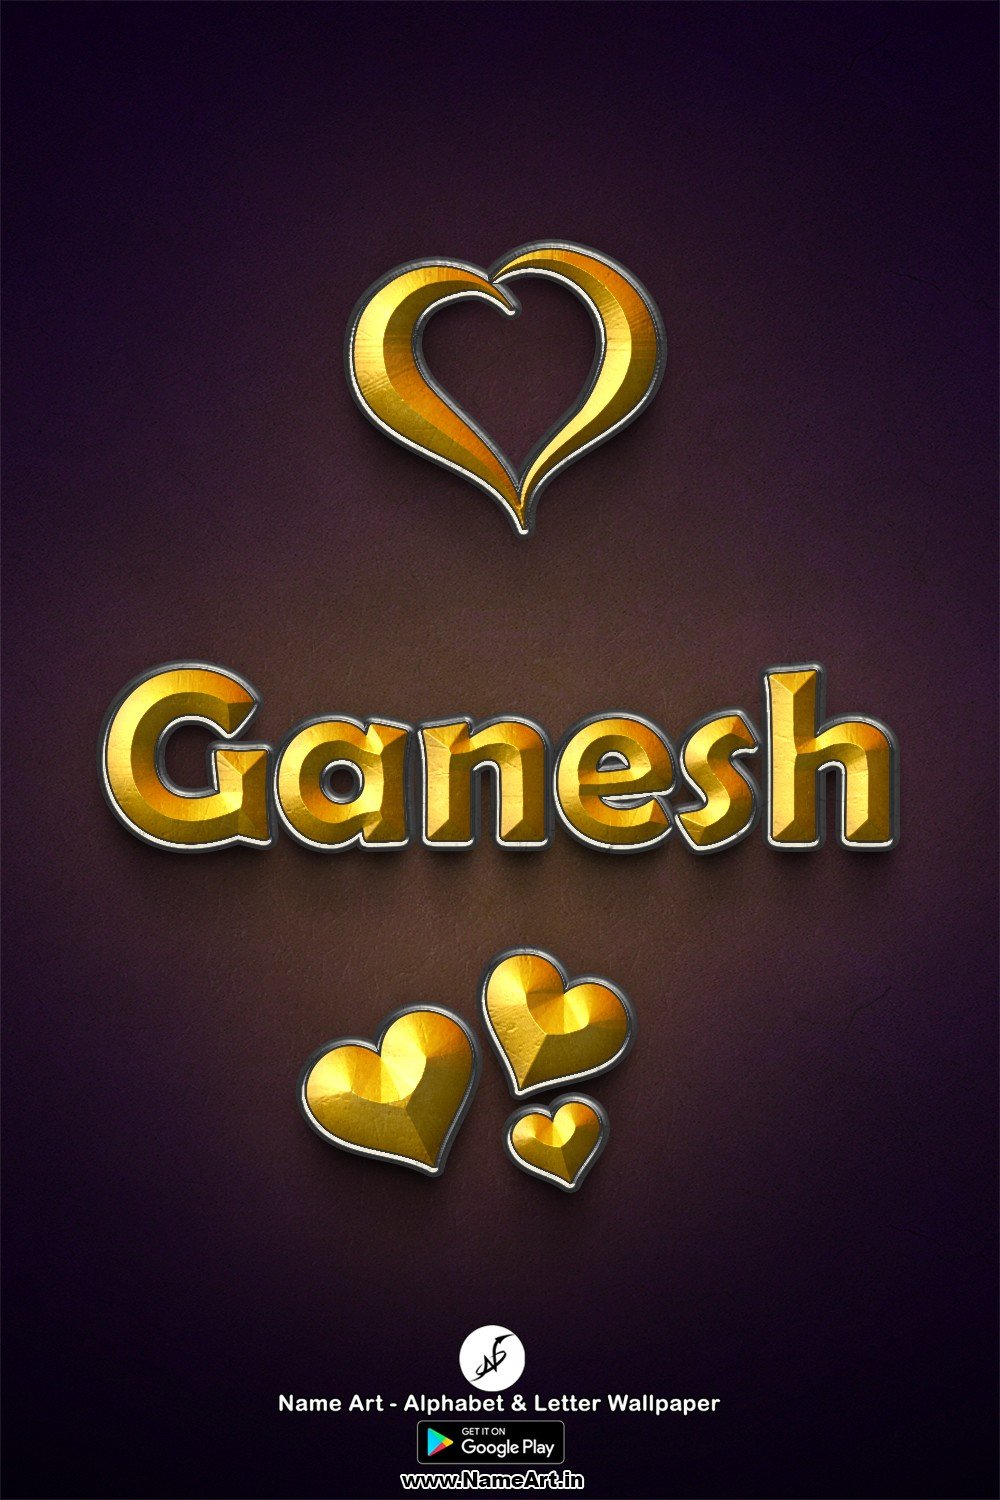 Ganesh | Whatsapp Status Ganesh | Happy Birthday To You !! | Ganesh New Whatsapp Status images |